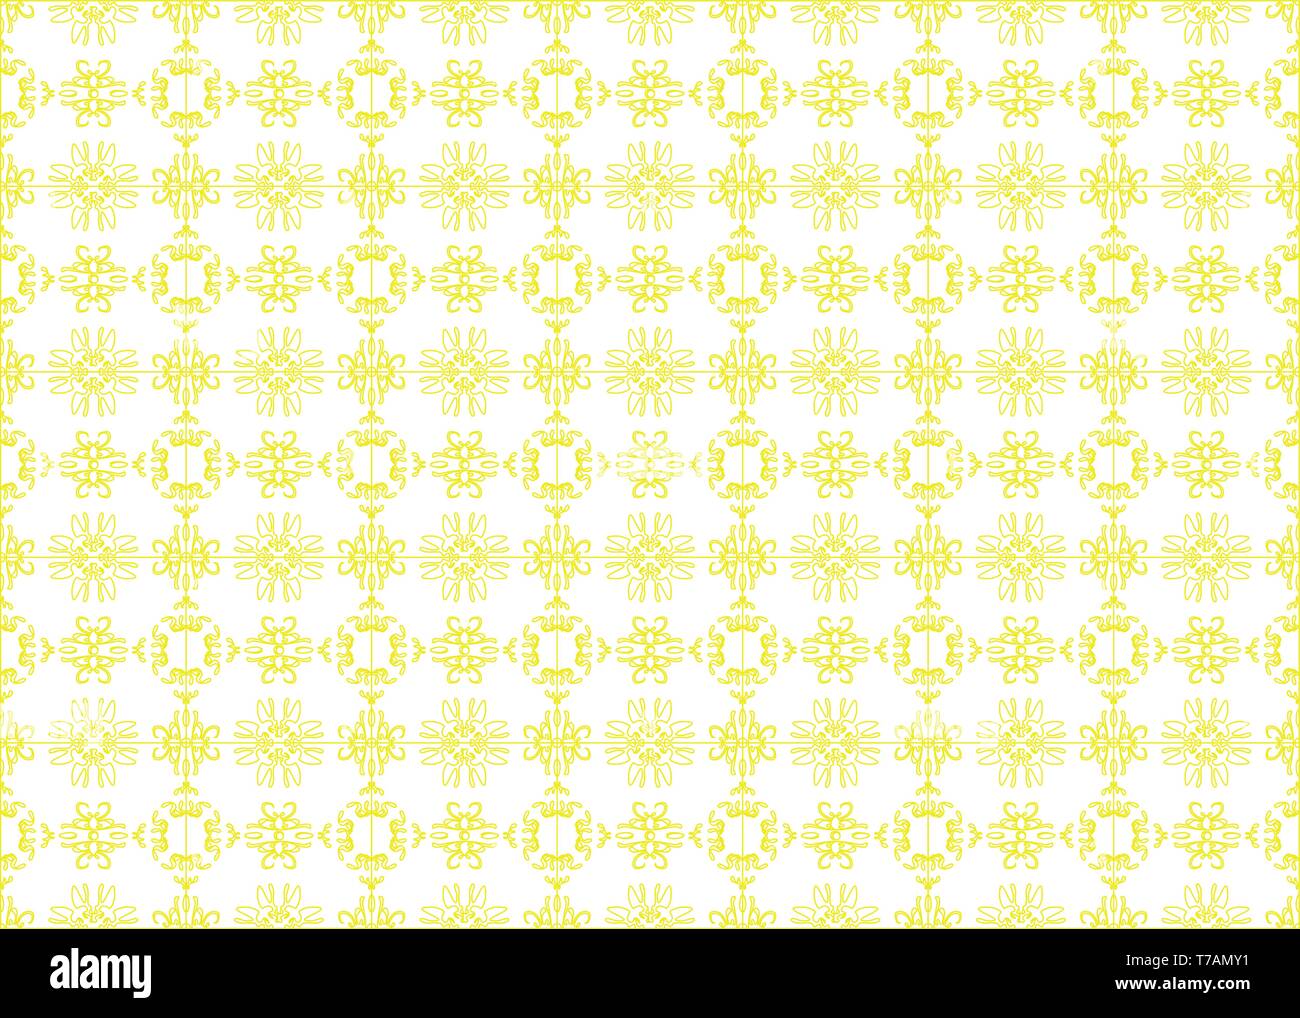 Profil de transparente vecteur motif floral stylisé, de nombreuses petites fleurs, trous, taches sur fond blanc. Faites à la main de petites fleurs jaunes. Flore transparente Illustration de Vecteur